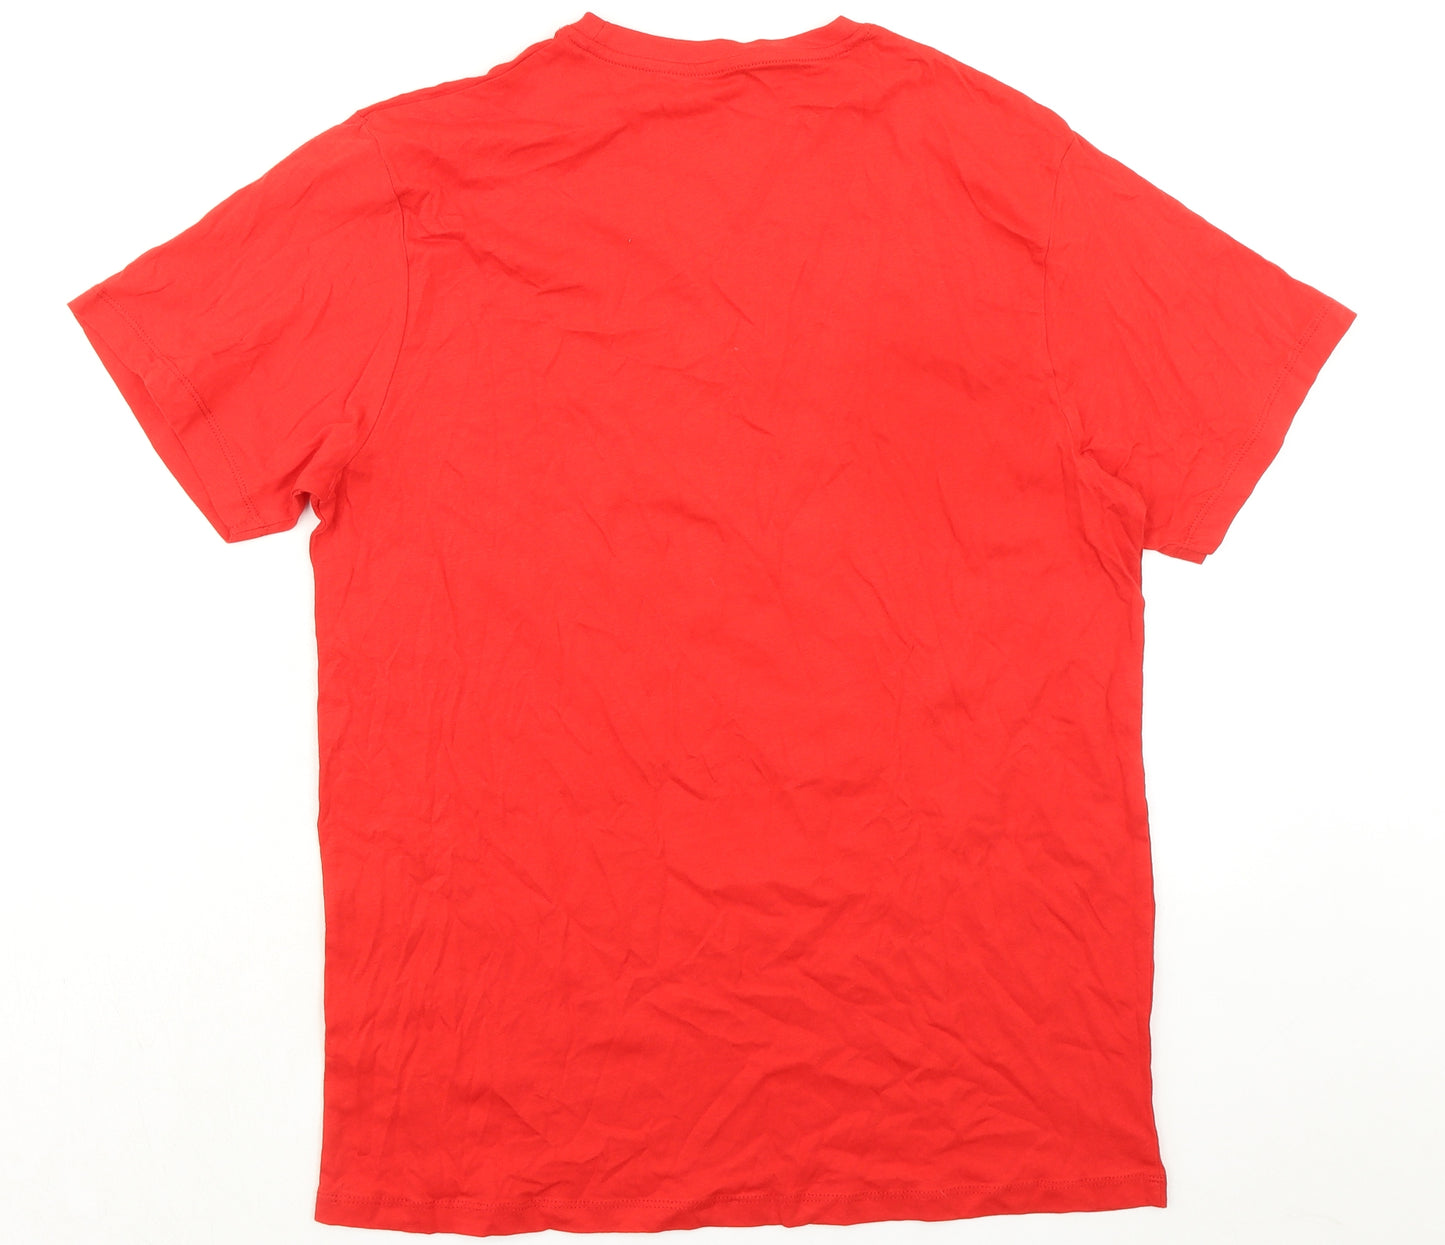 Liverpool FC Mens Red Cotton T-Shirt Size M Crew Neck - Premier League Champions